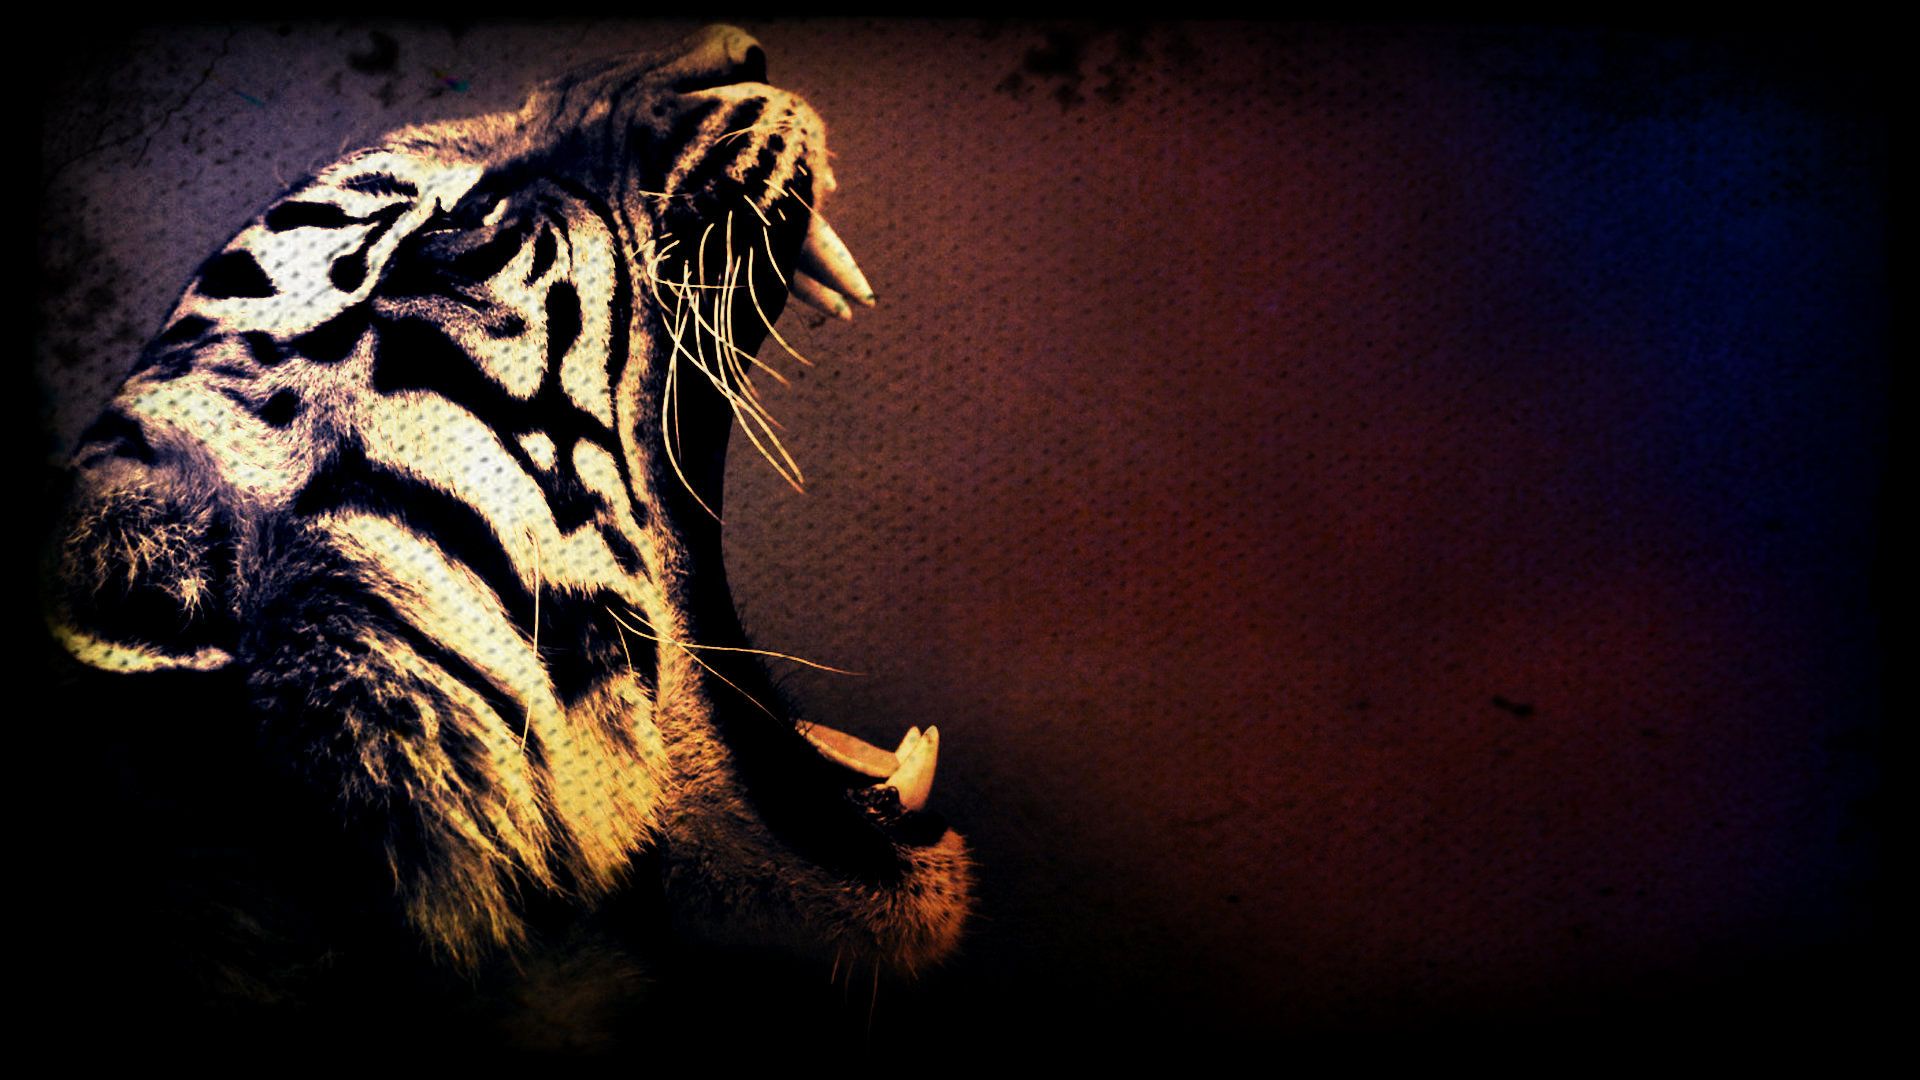 Tiger art wallpaper x tiger art tiger pictures tiger wallpaper